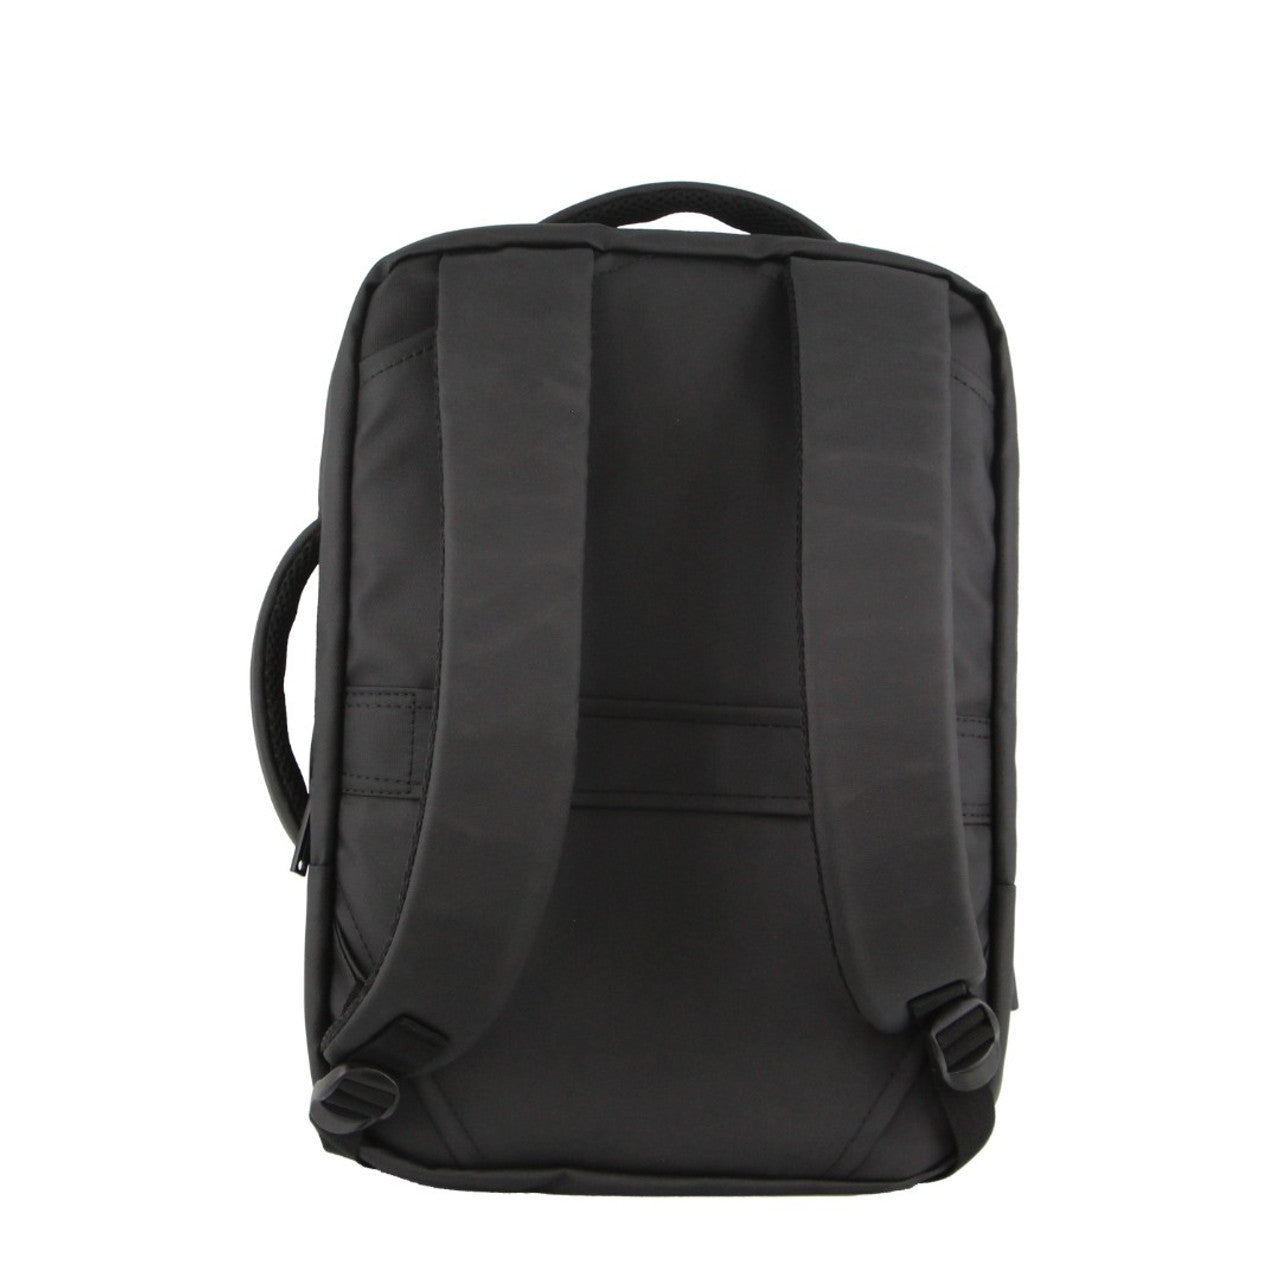 Pierre Cardin -PC3623 Top & Side handle 15in Laptop backpack w USB port - Grey-3